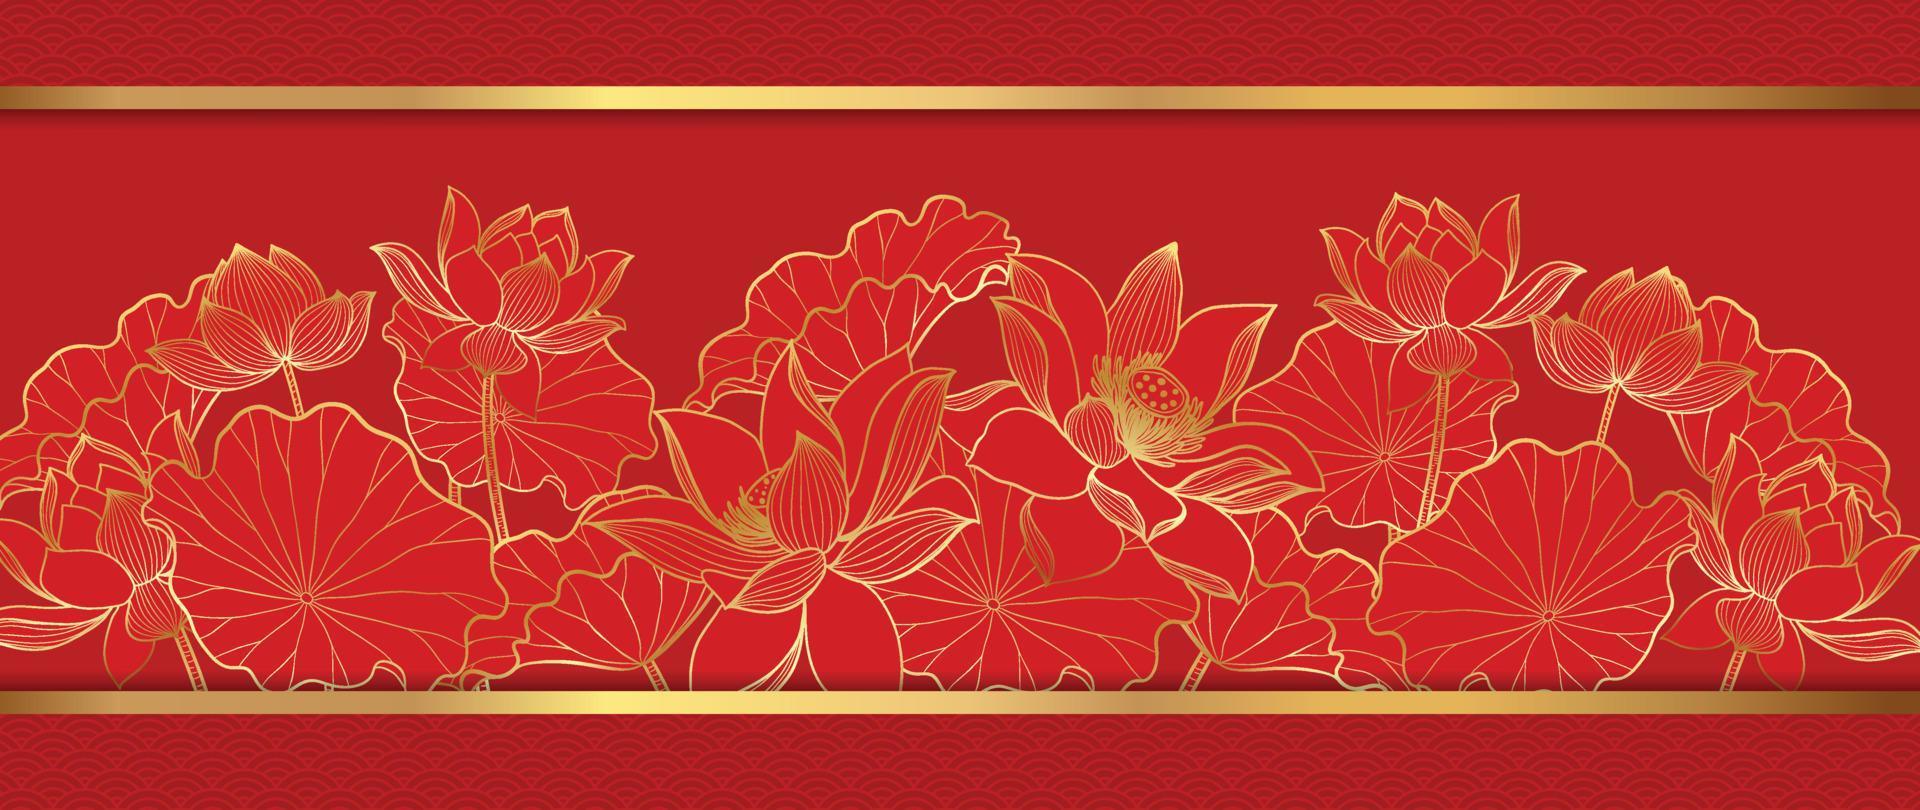 Chào mừng Tết Nguyên Đán! Với những họa tiết vô cùng độc đáo và đẹp mắt, bộ sưu tập Vector của chúng tôi sẽ khiến bạn bị cuốn hút ngay từ cái nhìn đầu tiên. Với những thiết kế đặc trưng của Năm mới Trung Quốc, hãy để chúng tôi đưa bạn đến với một thế giới đầy sắc màu và niềm vui. 